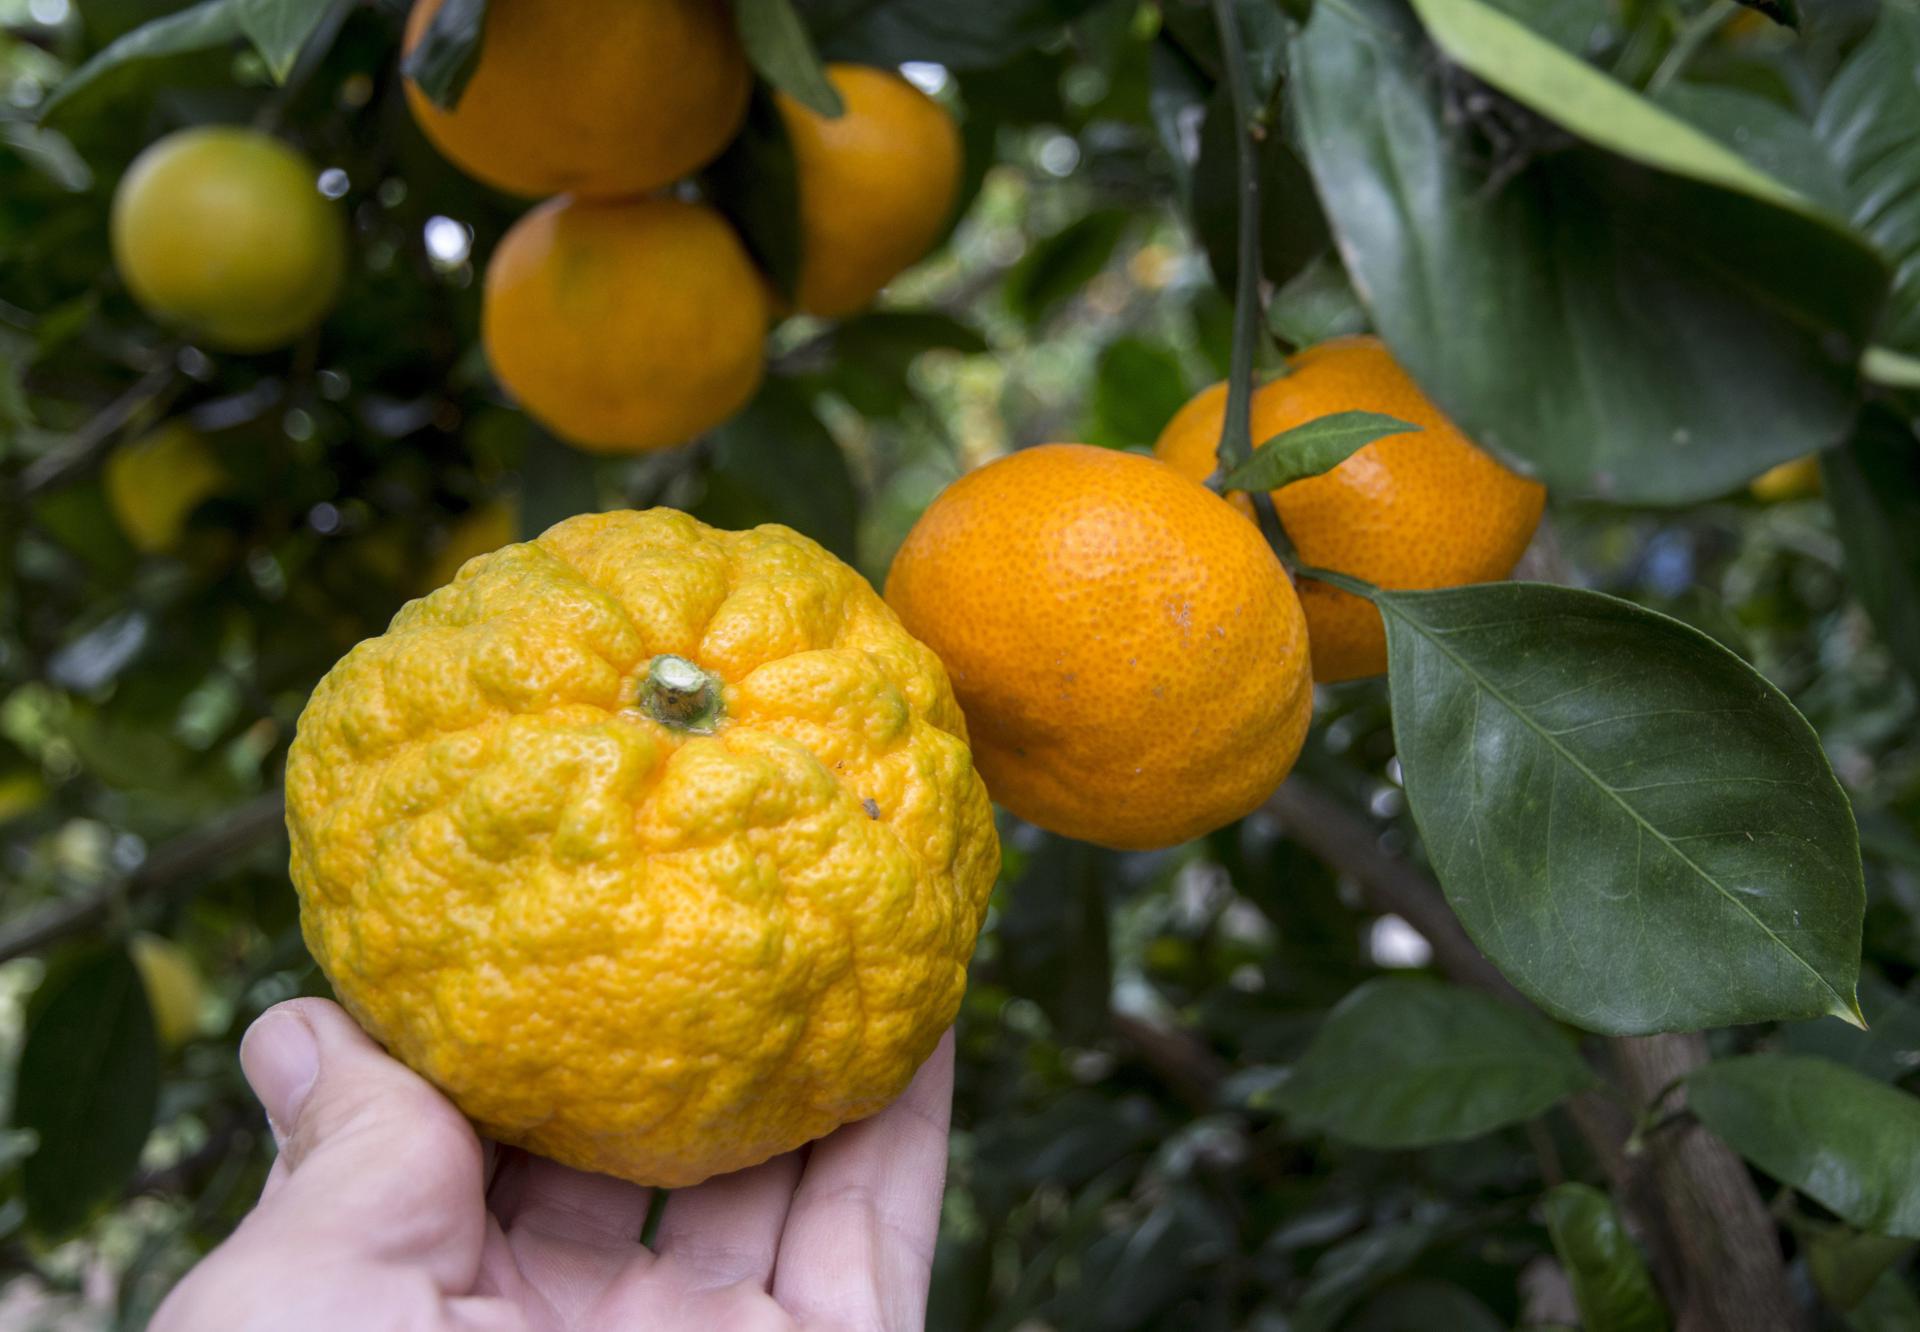 Tvrtci iz Čapljine naređeno da u Hrvatsku vrati uvezene mandarine ili ih uništi